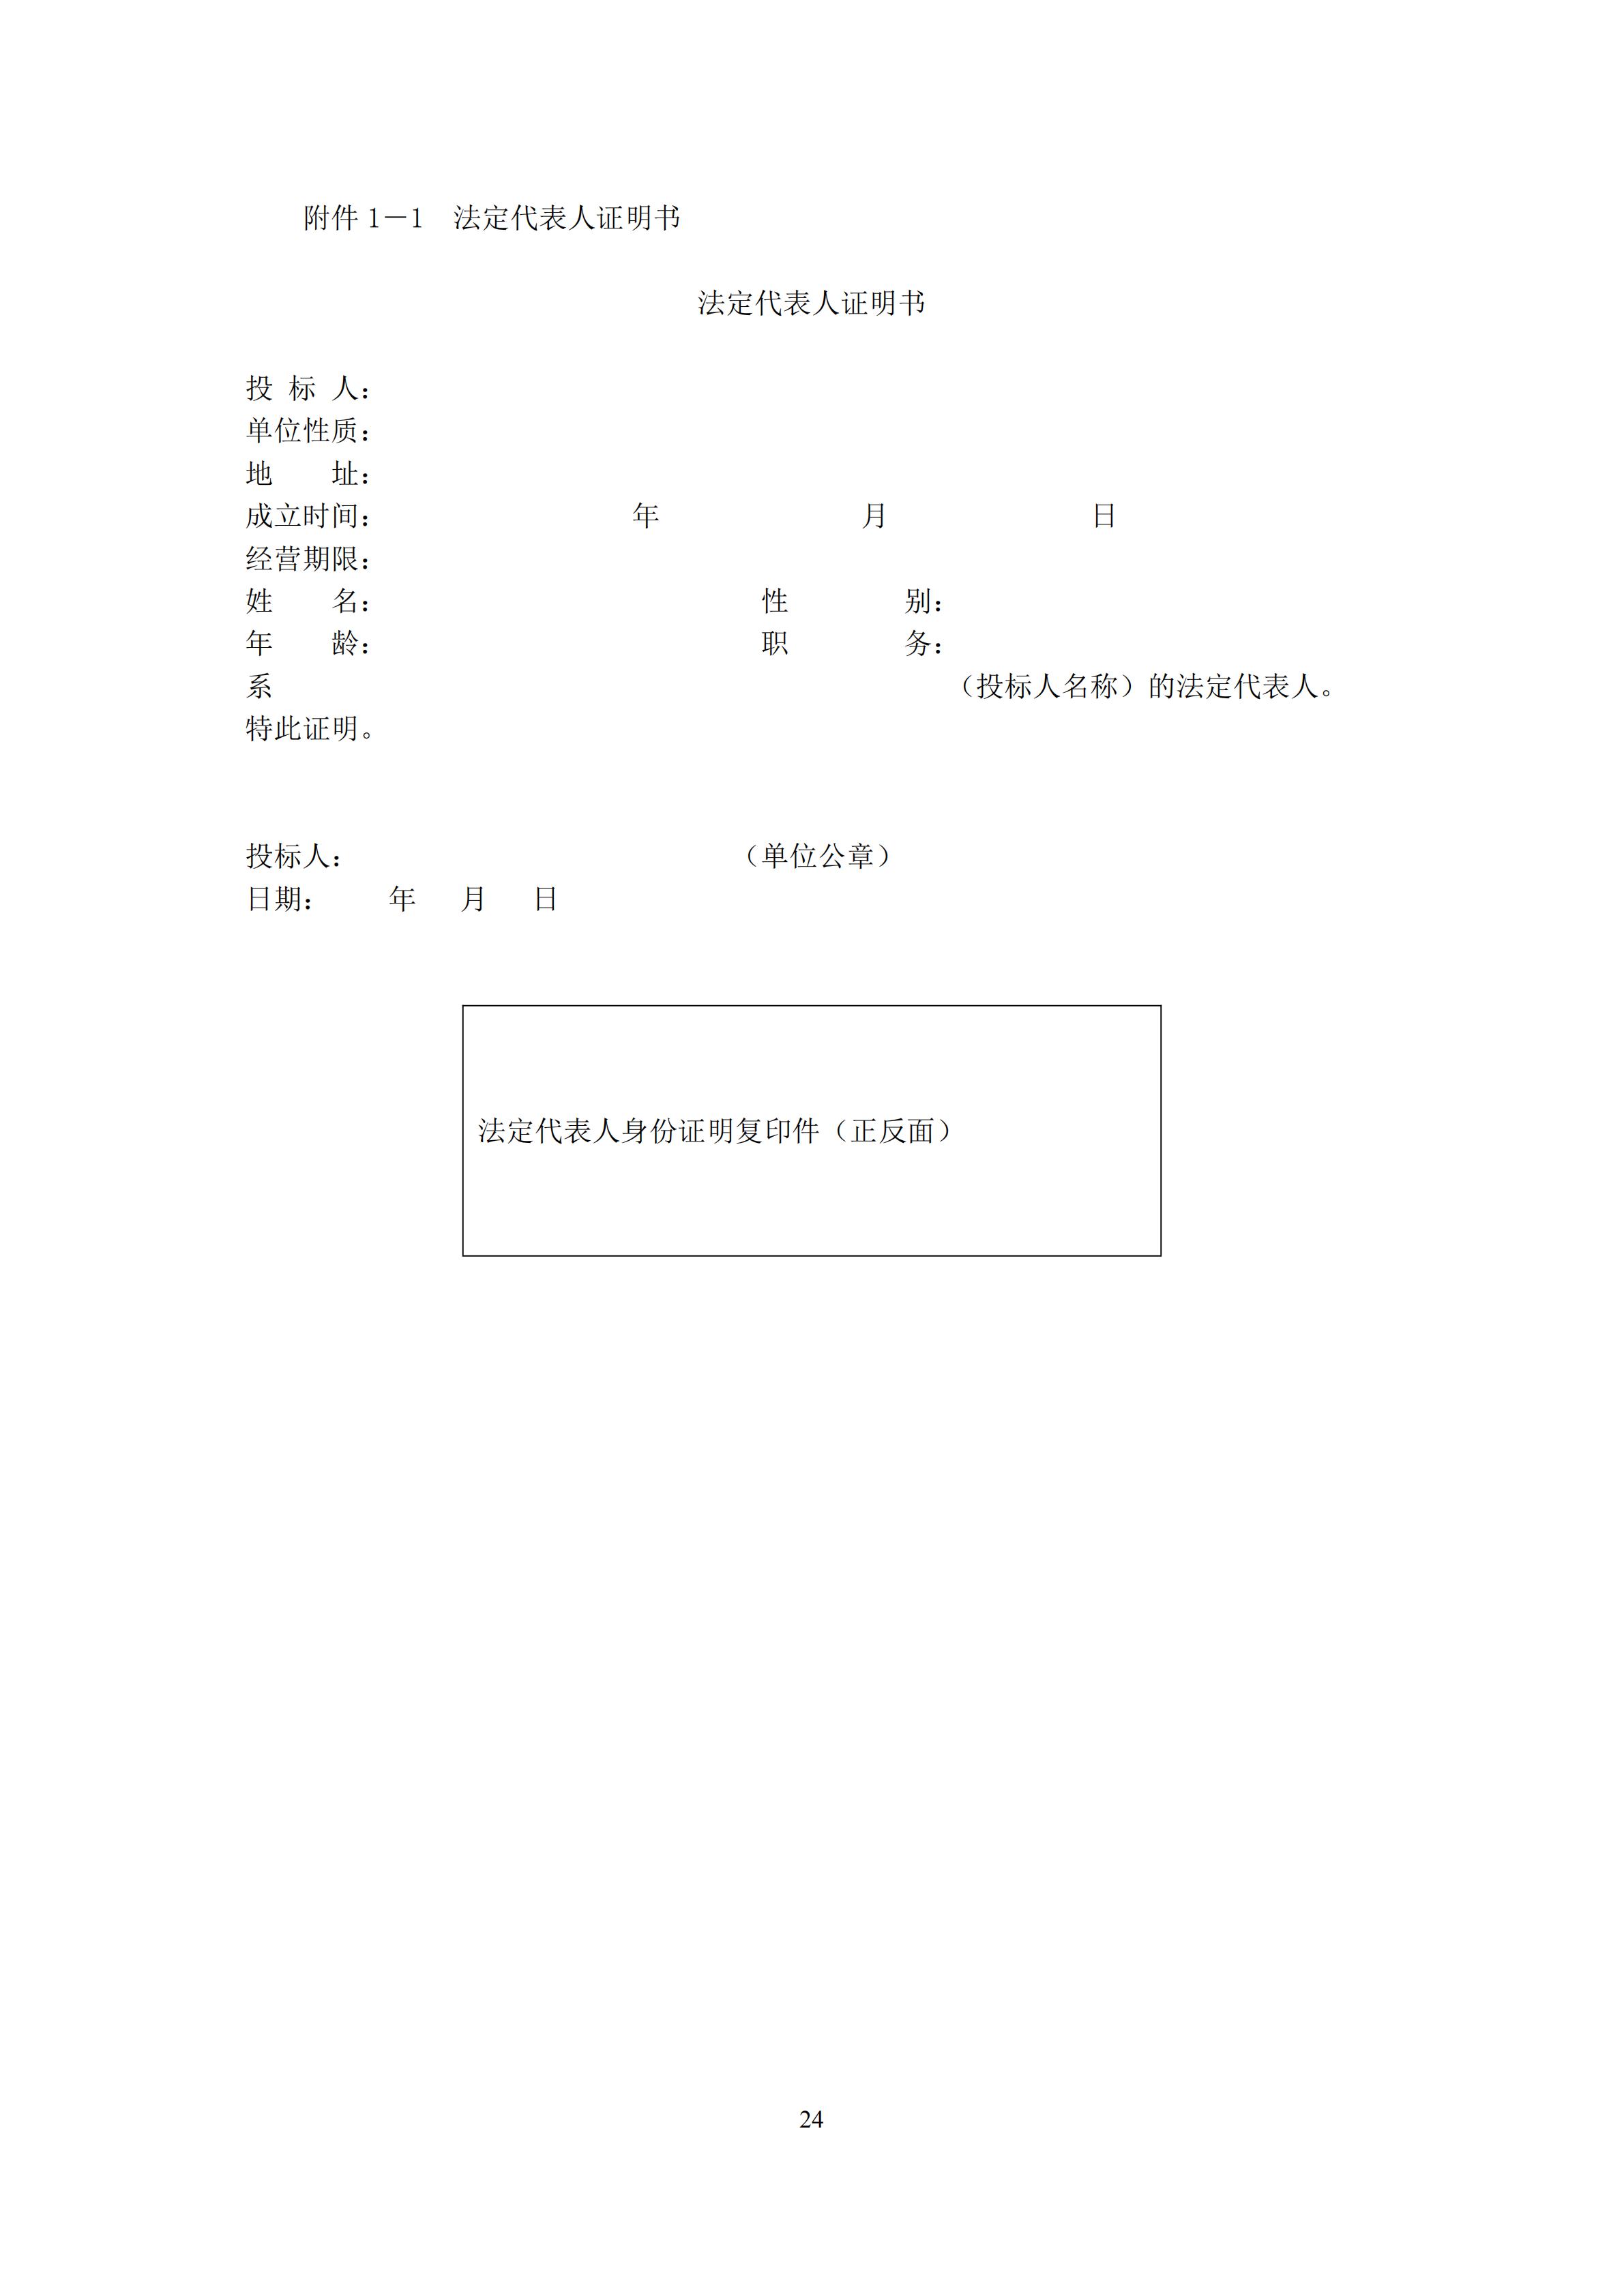 2022年江西省大众跆拳道系列赛电子护具租赁和竞赛系统服务项目招标文件_23.jpg